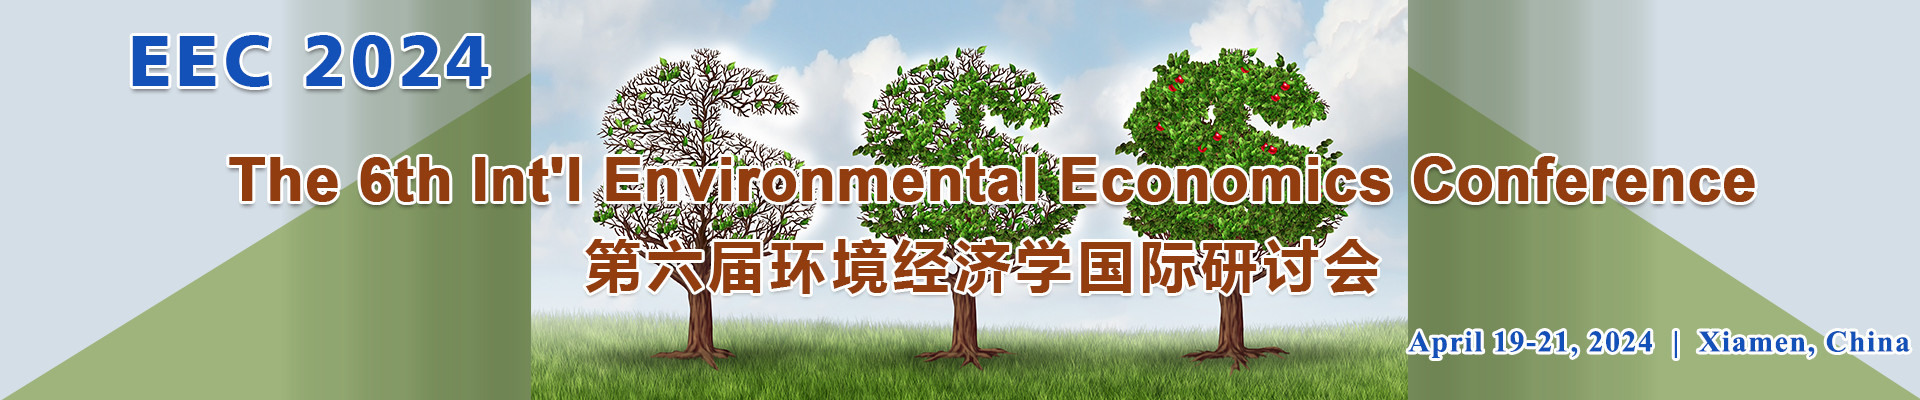 第六届环境经济学国际研讨会(EEC 2024)